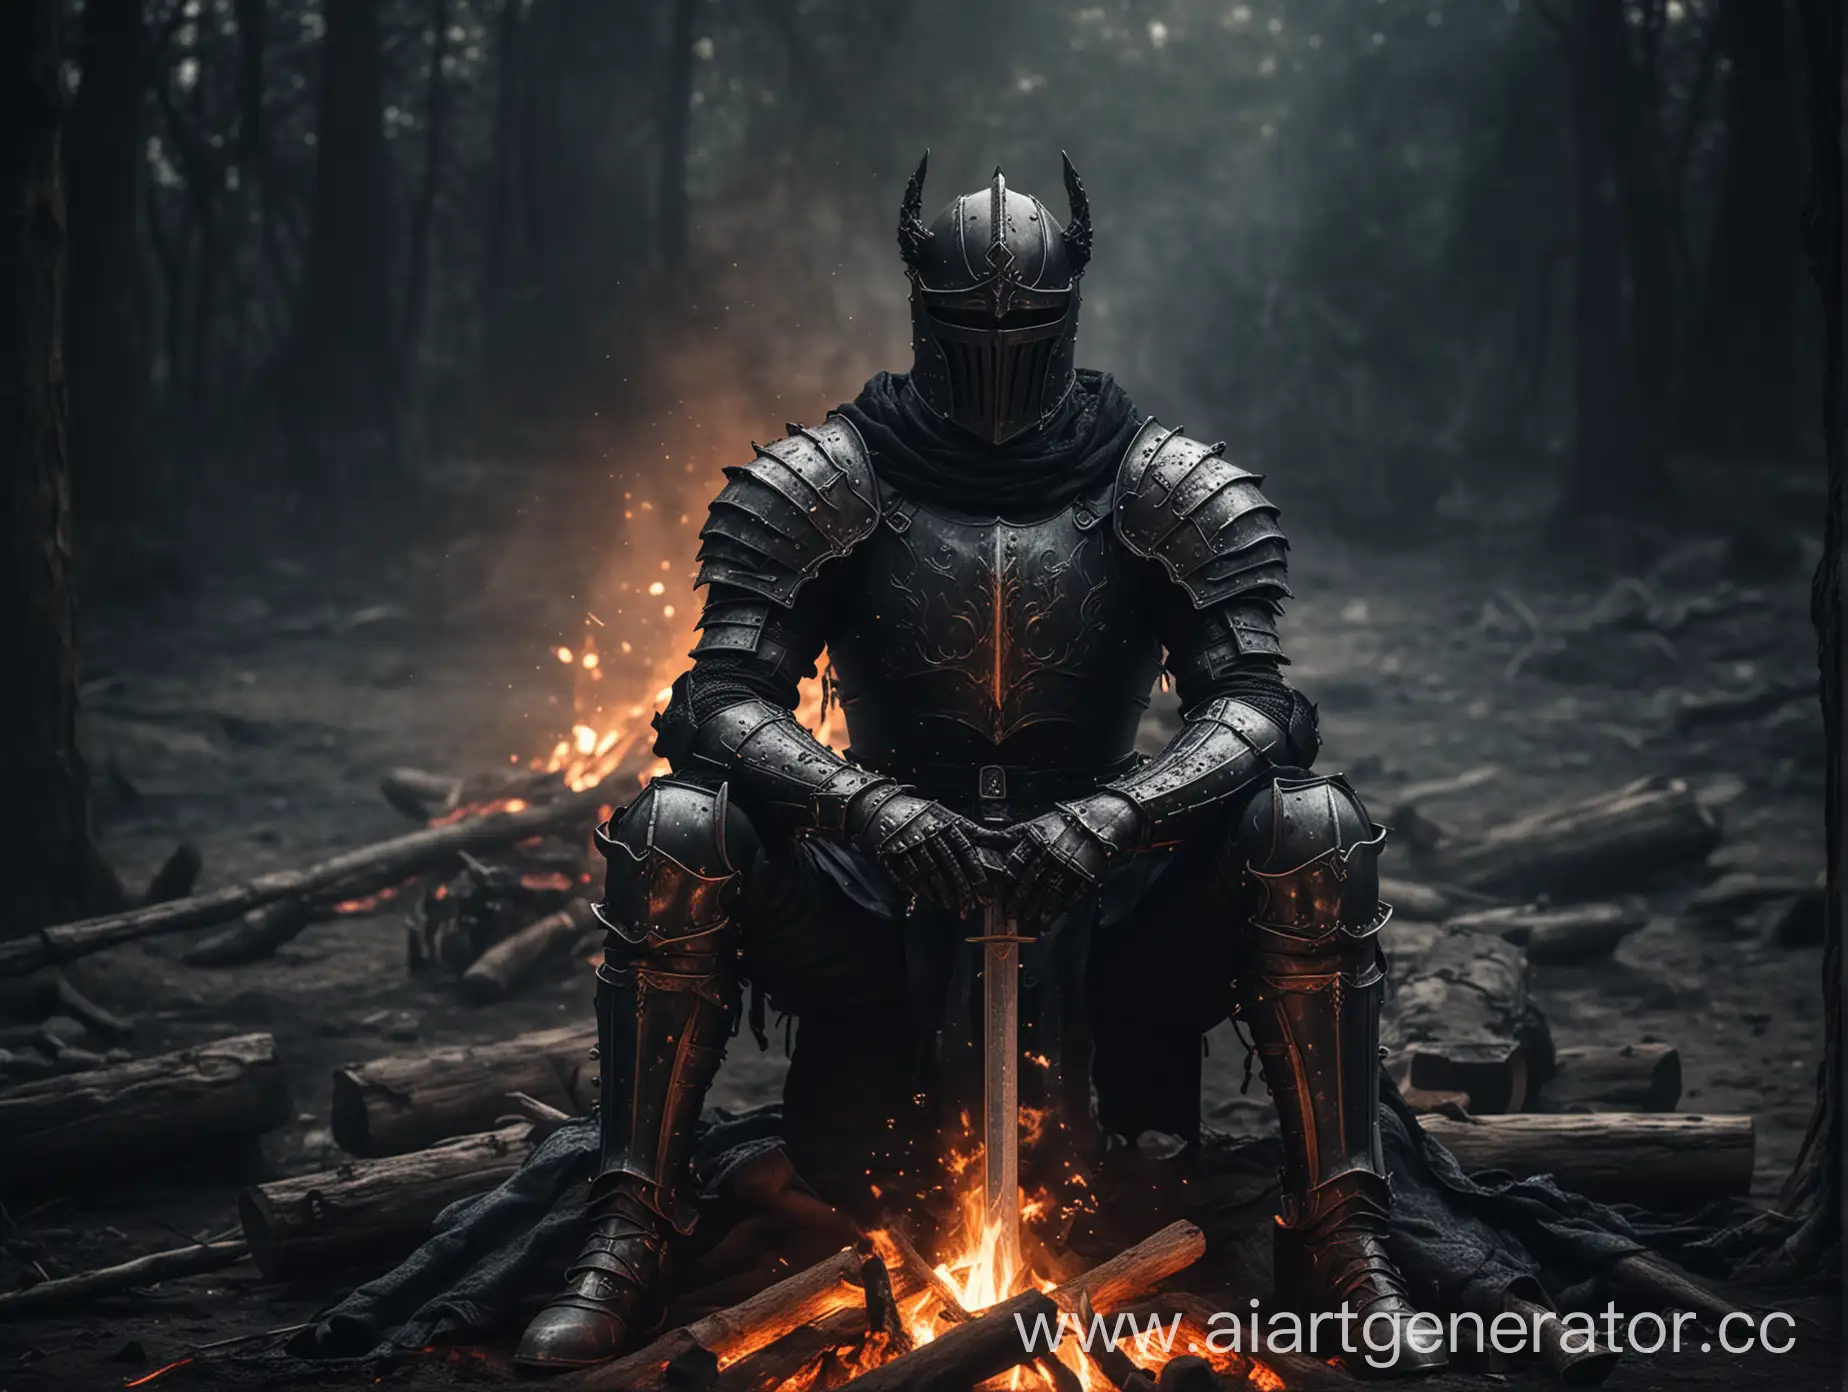 Угрюмый рыцарь в черных доспехах сидит рядом с костром, картинка в стиле тёмного фентези.